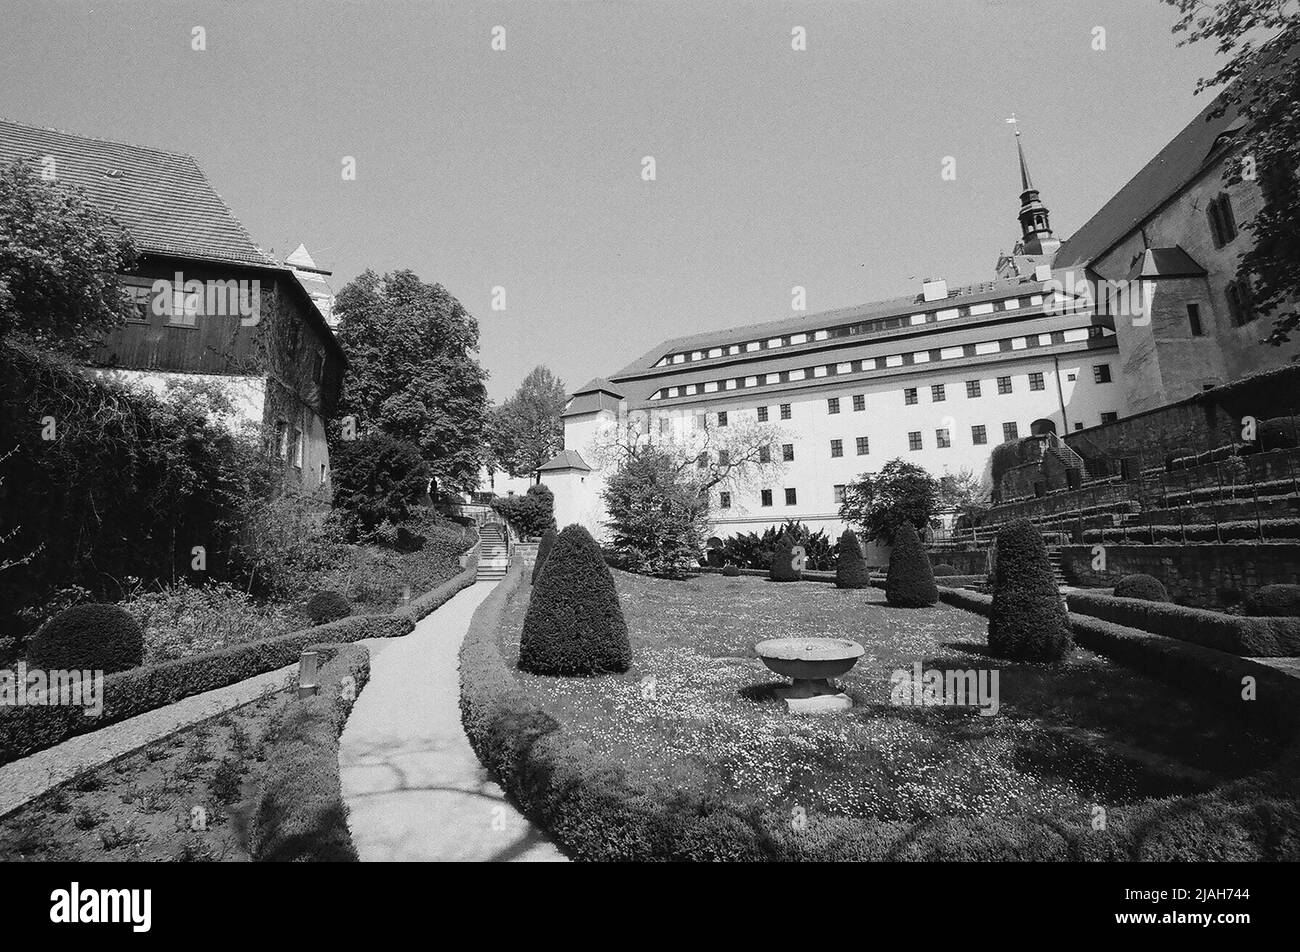 Beau jardin de château vide pendant l'été localisé en Allemagne en noir et blanc Banque D'Images